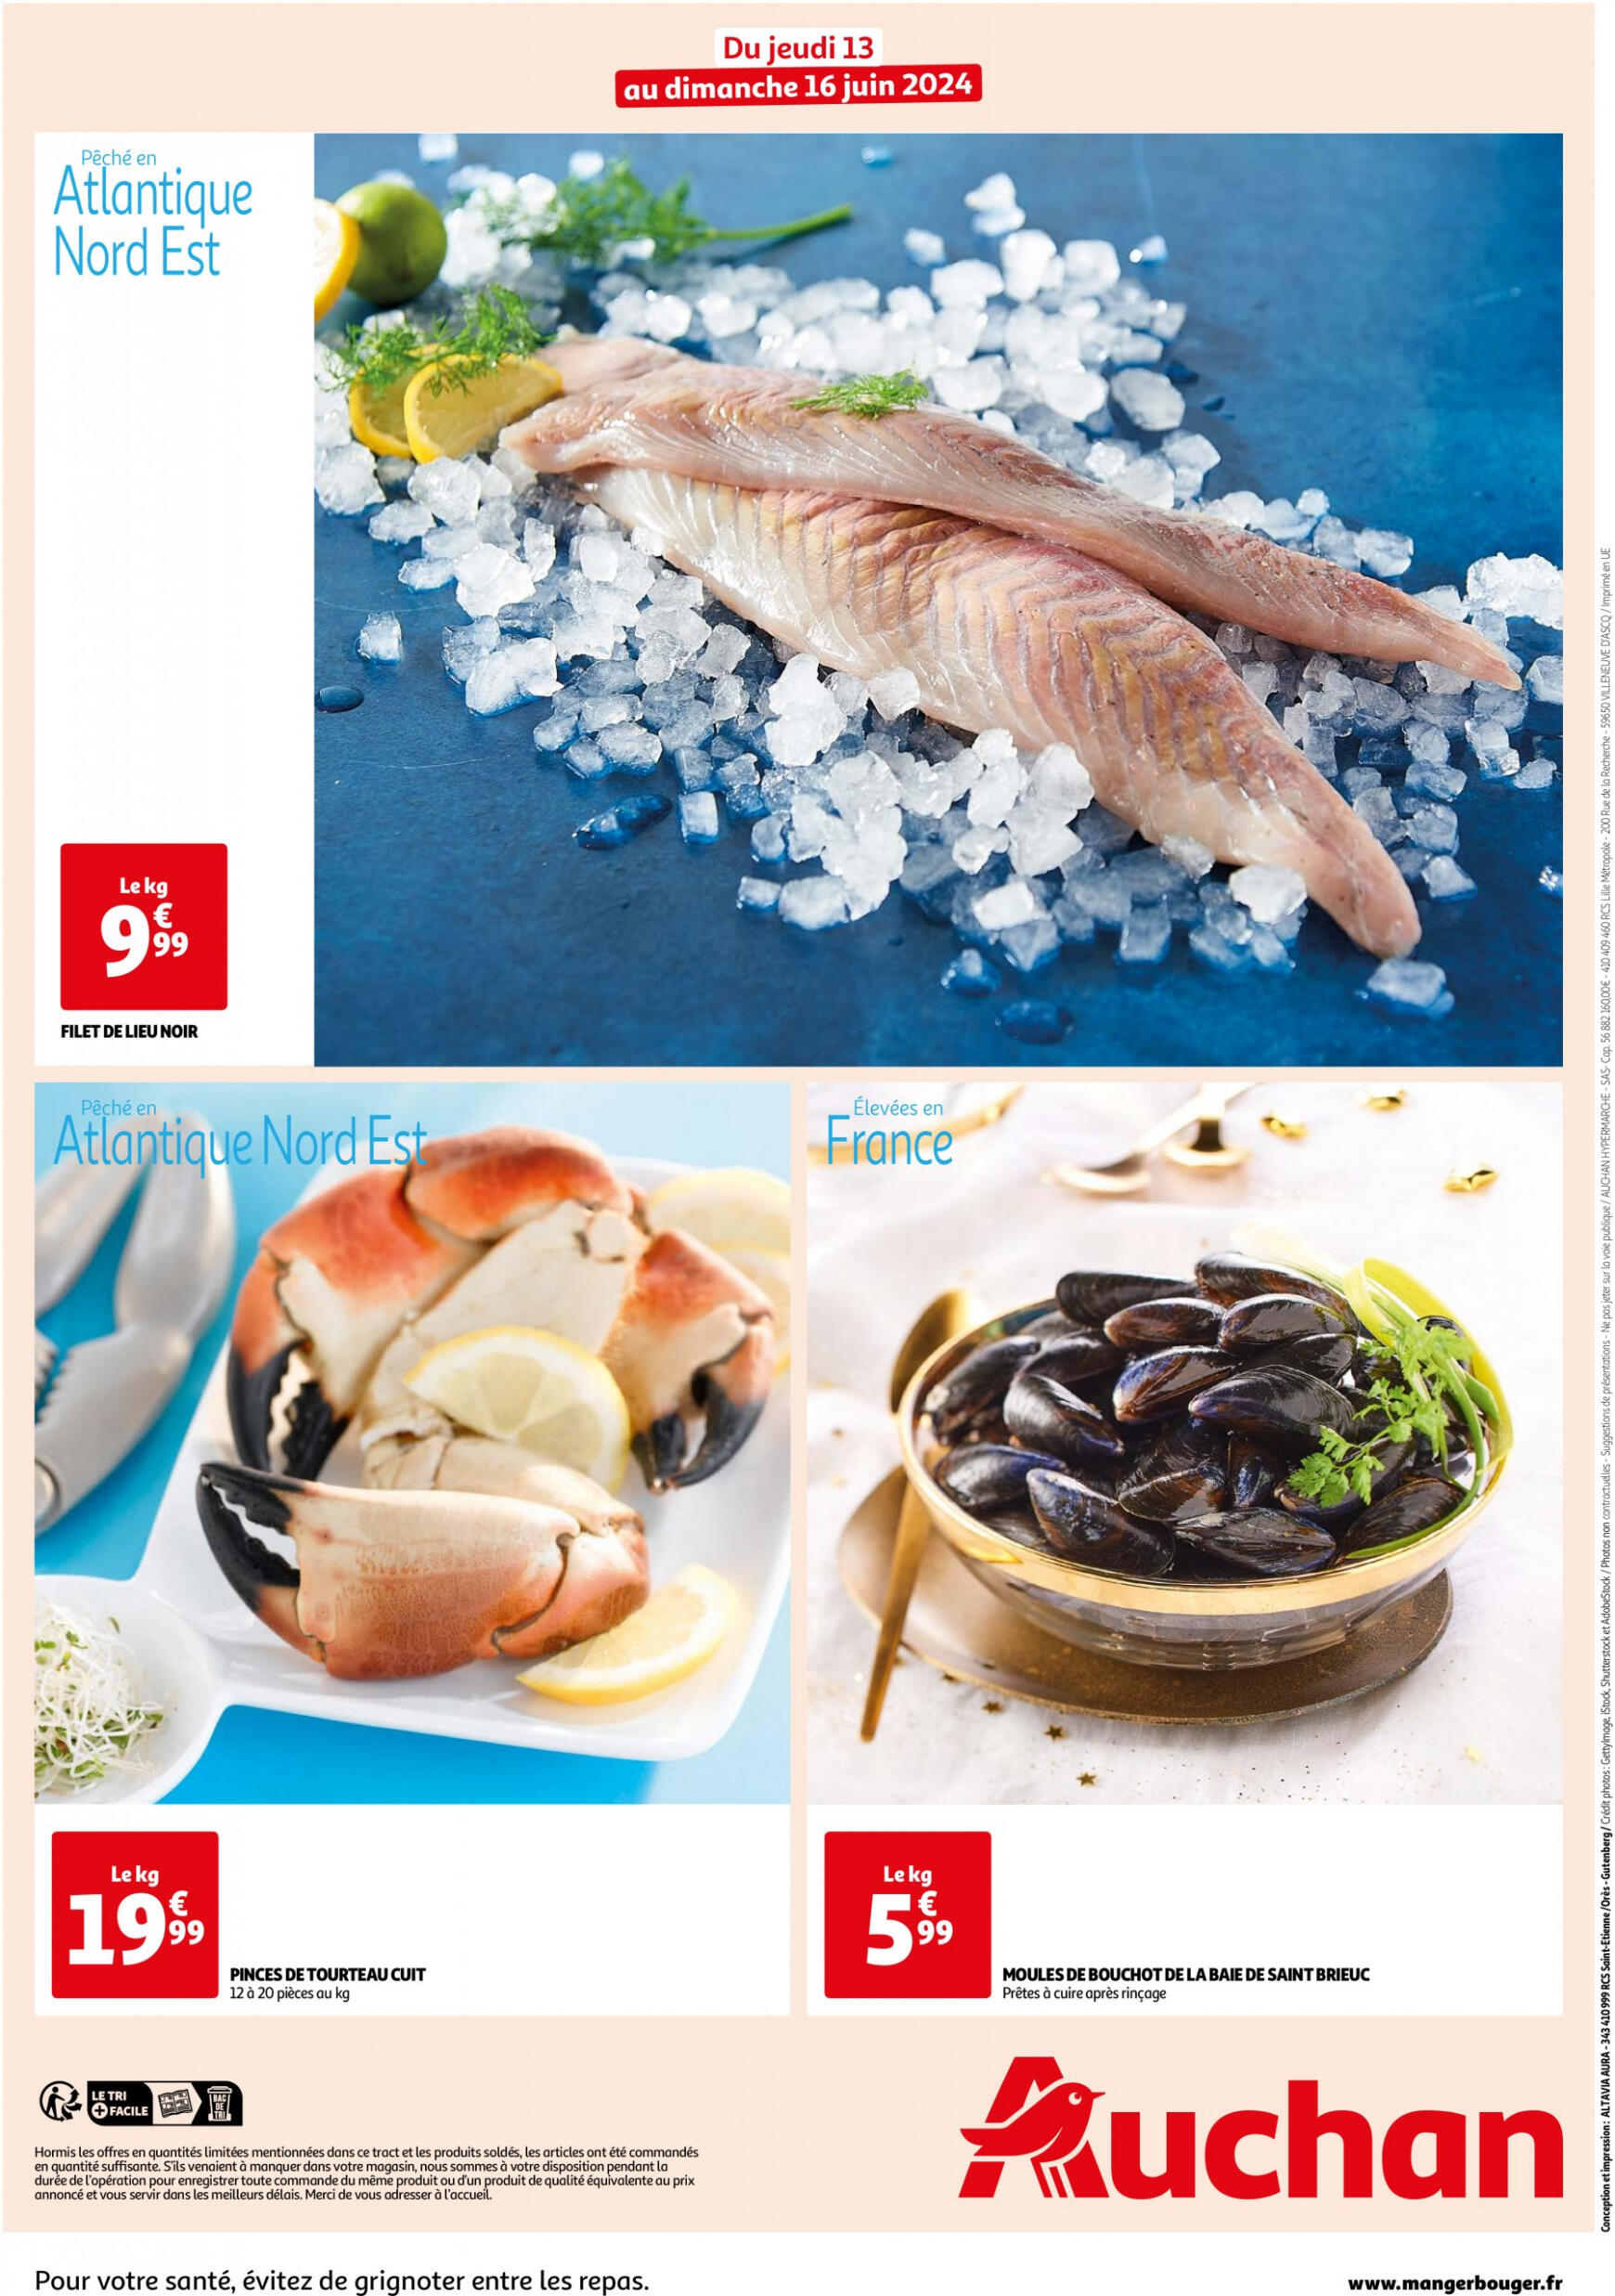 auchan - Auchan - Les bons plans du week-end dans votre hyper ! folder huidig 13.06. - 16.06. - page: 2